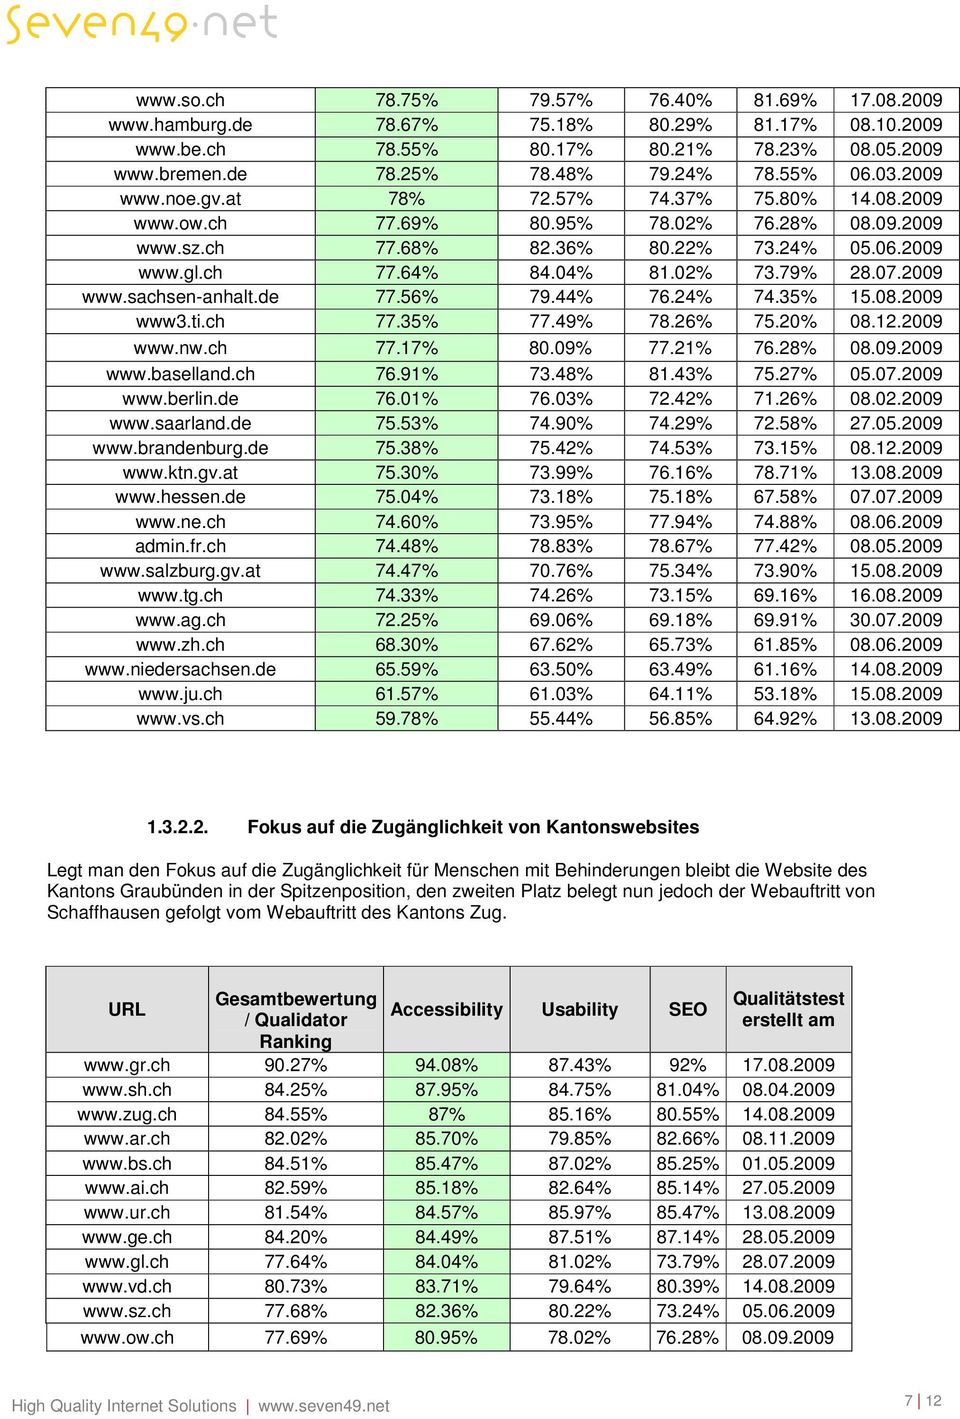 2009 www.sachsen-anhalt.de 77.56% 79.44% 76.24% 74.35% 15.08.2009 www3.ti.ch 77.35% 77.49% 78.26% 75.20% 08.12.2009 www.nw.ch 77.17% 80.09% 77.21% 76.28% 08.09.2009 www.baselland.ch 76.91% 73.48% 81.